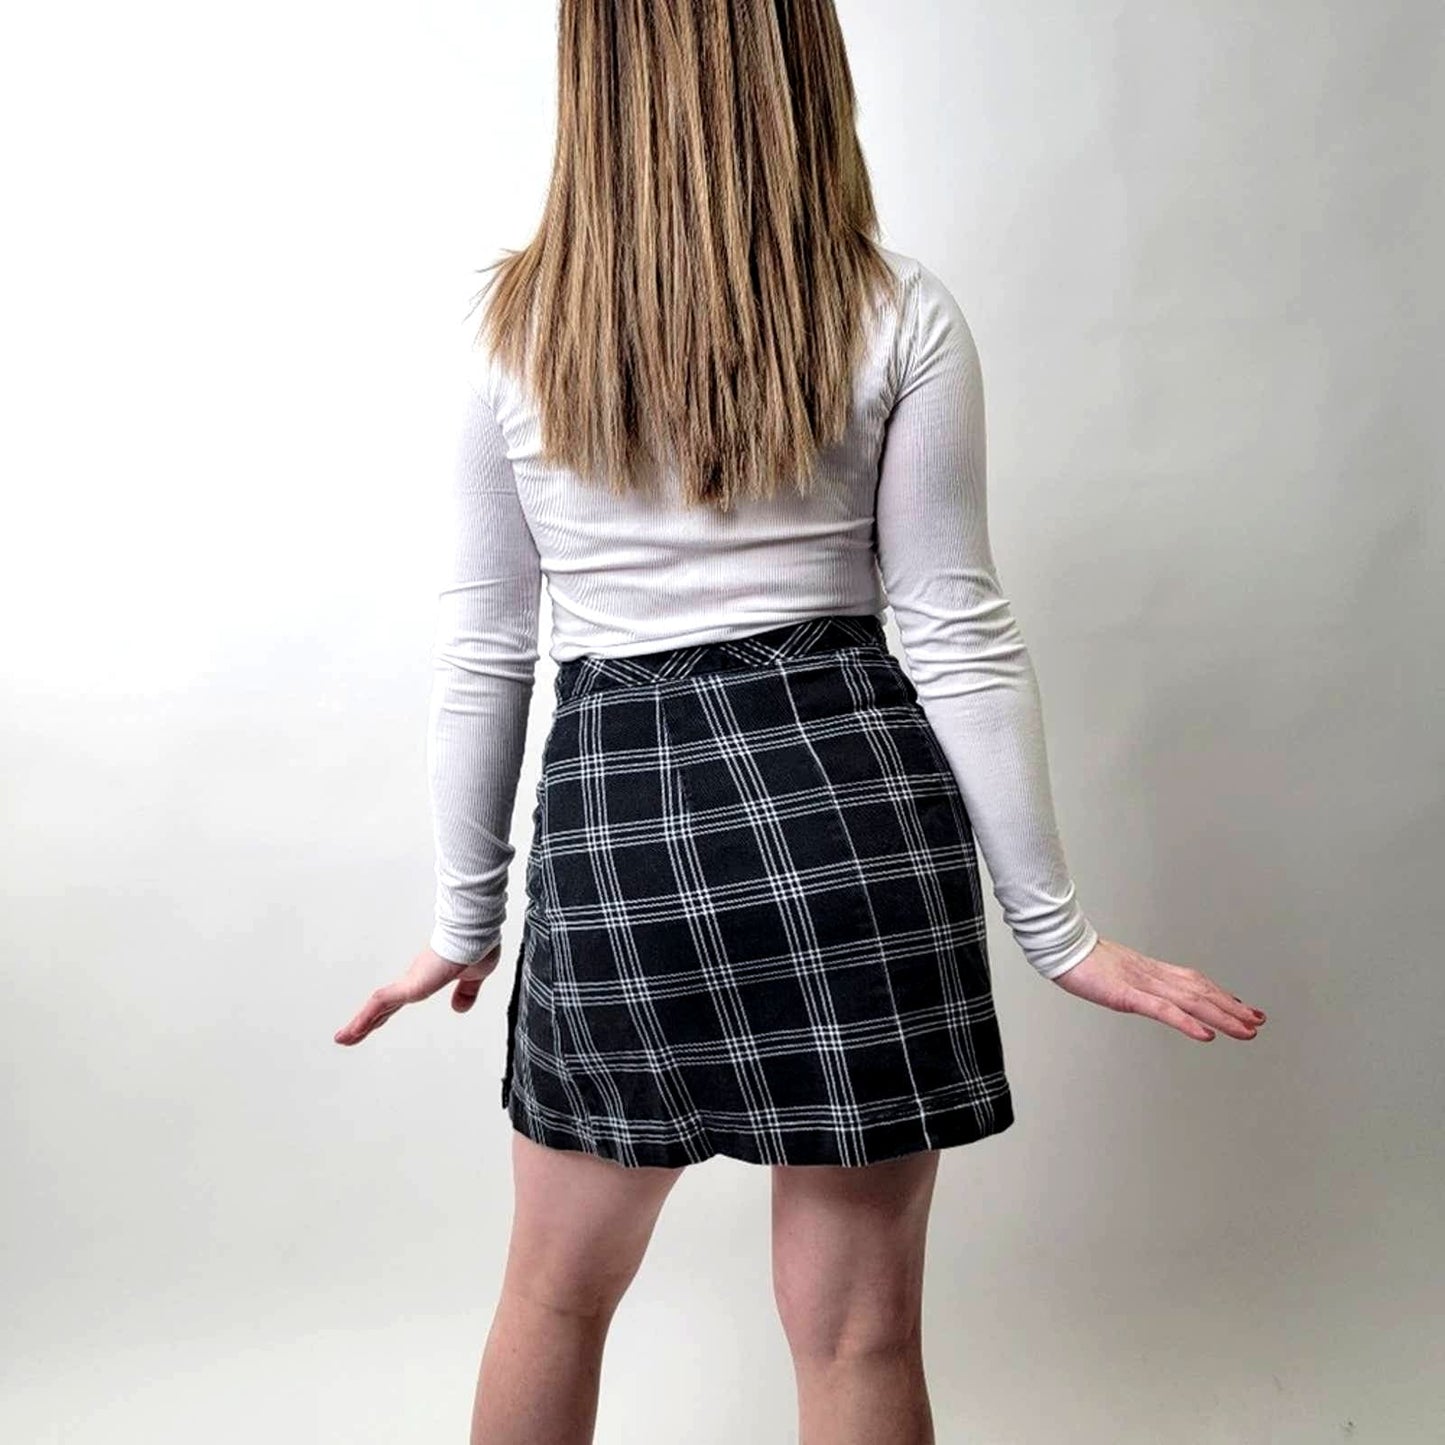 H&M Black & Plaid Skirt - 6